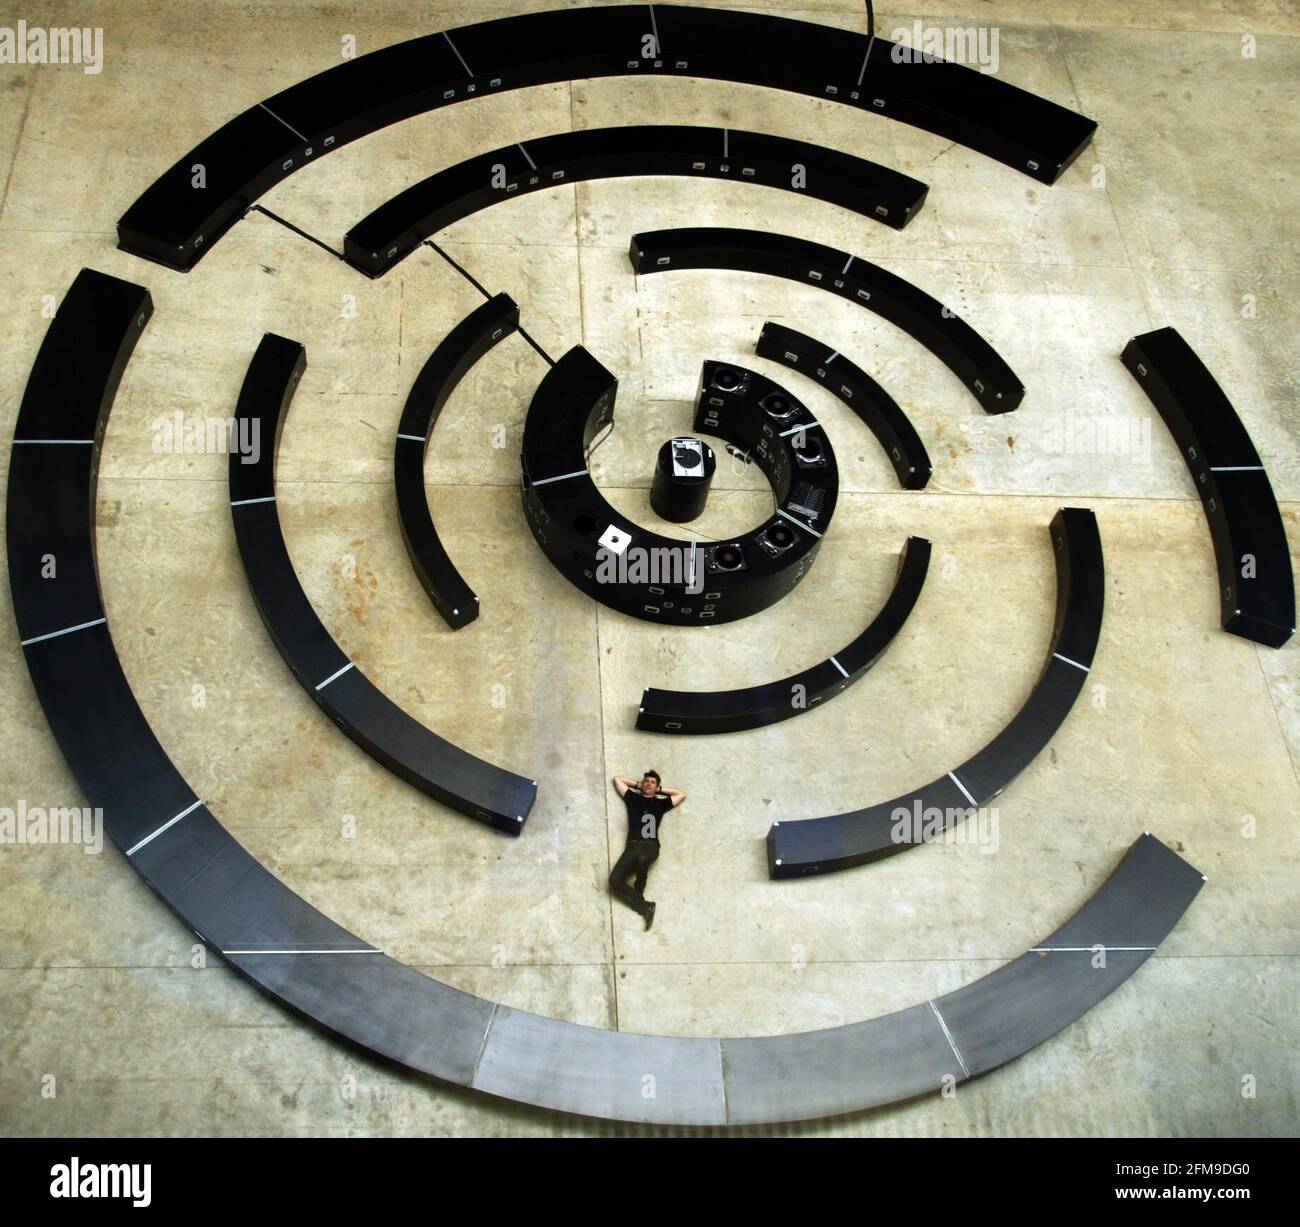 Im Rahmen von UBS Openings: The Long Weekend, dem viertägigen Festival der Tate Modern für den Mai-Feiertag, hat der Künstler Mathieu Briand ein riesiges experimentelles Tonstudio und einen Performance-Raum geschaffen, "The Spiral", der das Turbine Hall-Bild David Sandison füllt Stockfoto